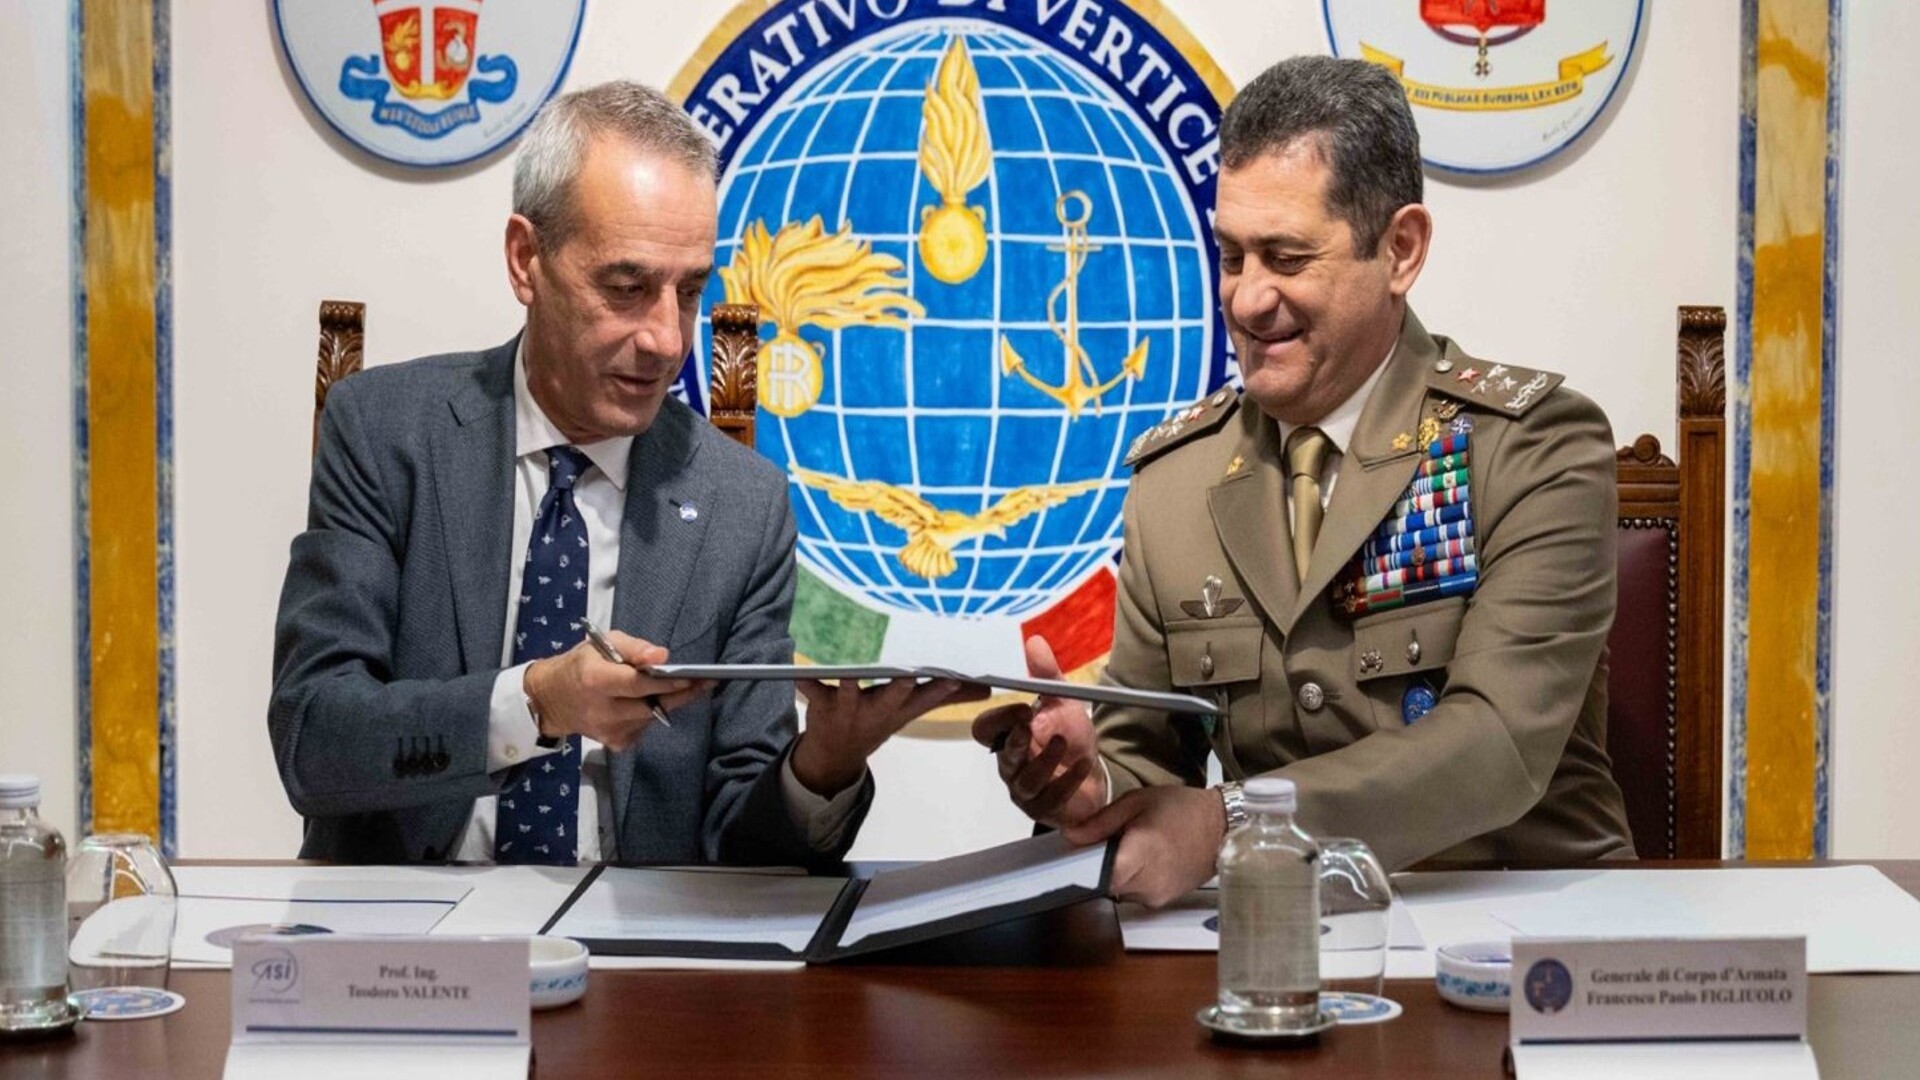 ASI - Firmato l’Accordo Quadro tra il Comando Operativo Vertice Interforze (Covi) e l’ASI per la collaborazione nel settore delle operazioni spaziali